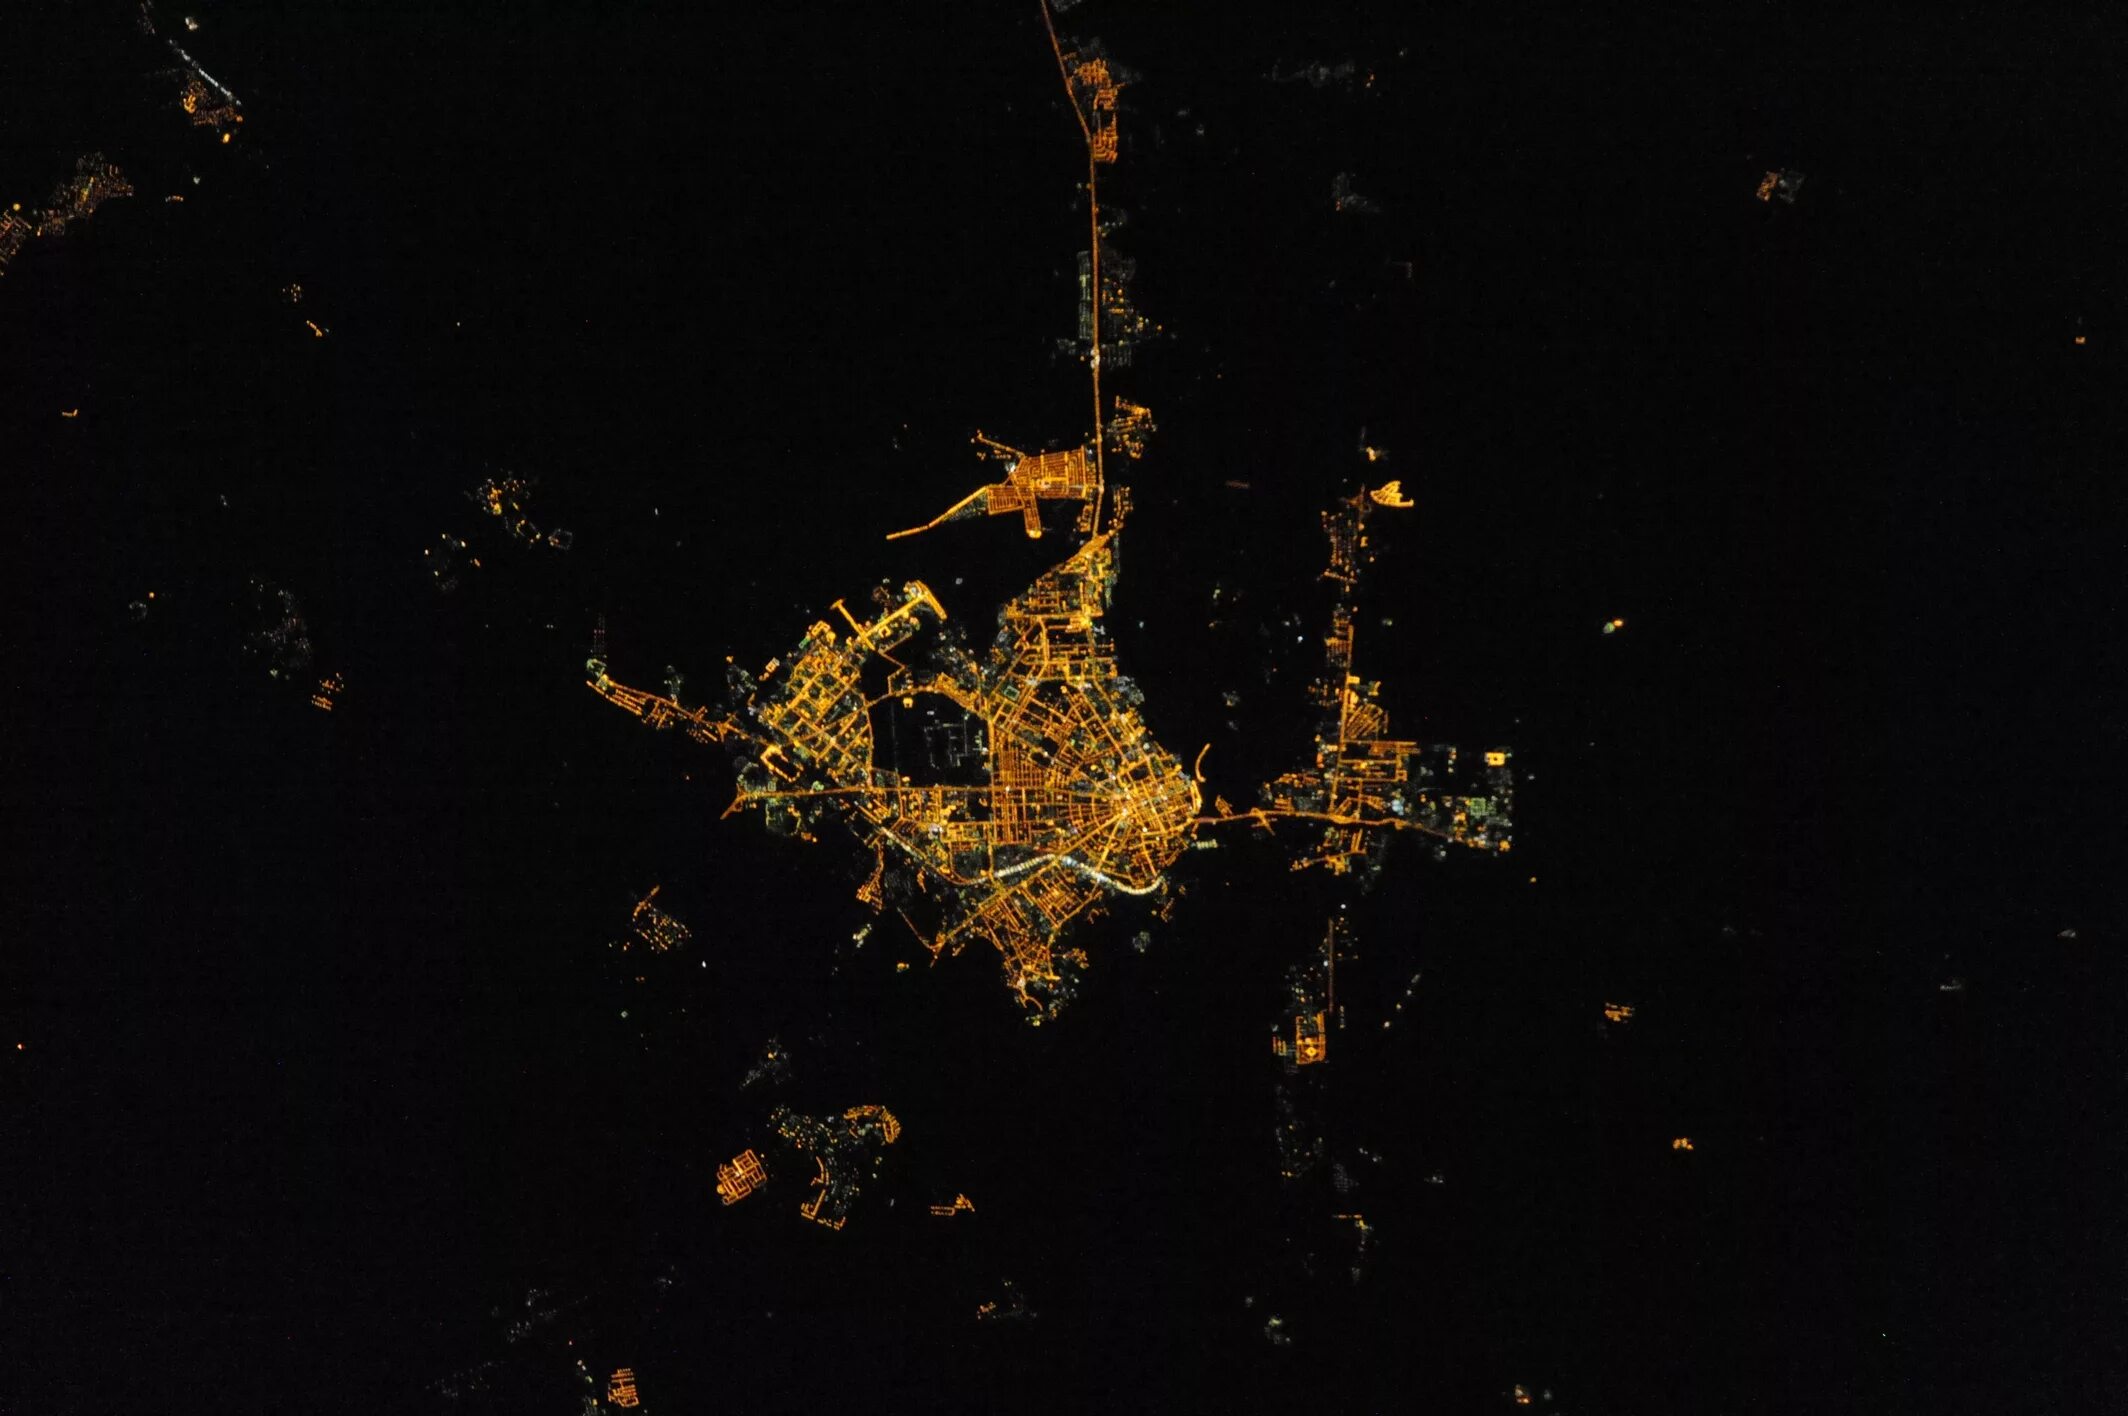 Вид оренбурга со спутника в реальном времени. Оренбург из космоса. Города ночью из космоса. Оренбург вид из космоса. Ночной Оренбург из космоса.